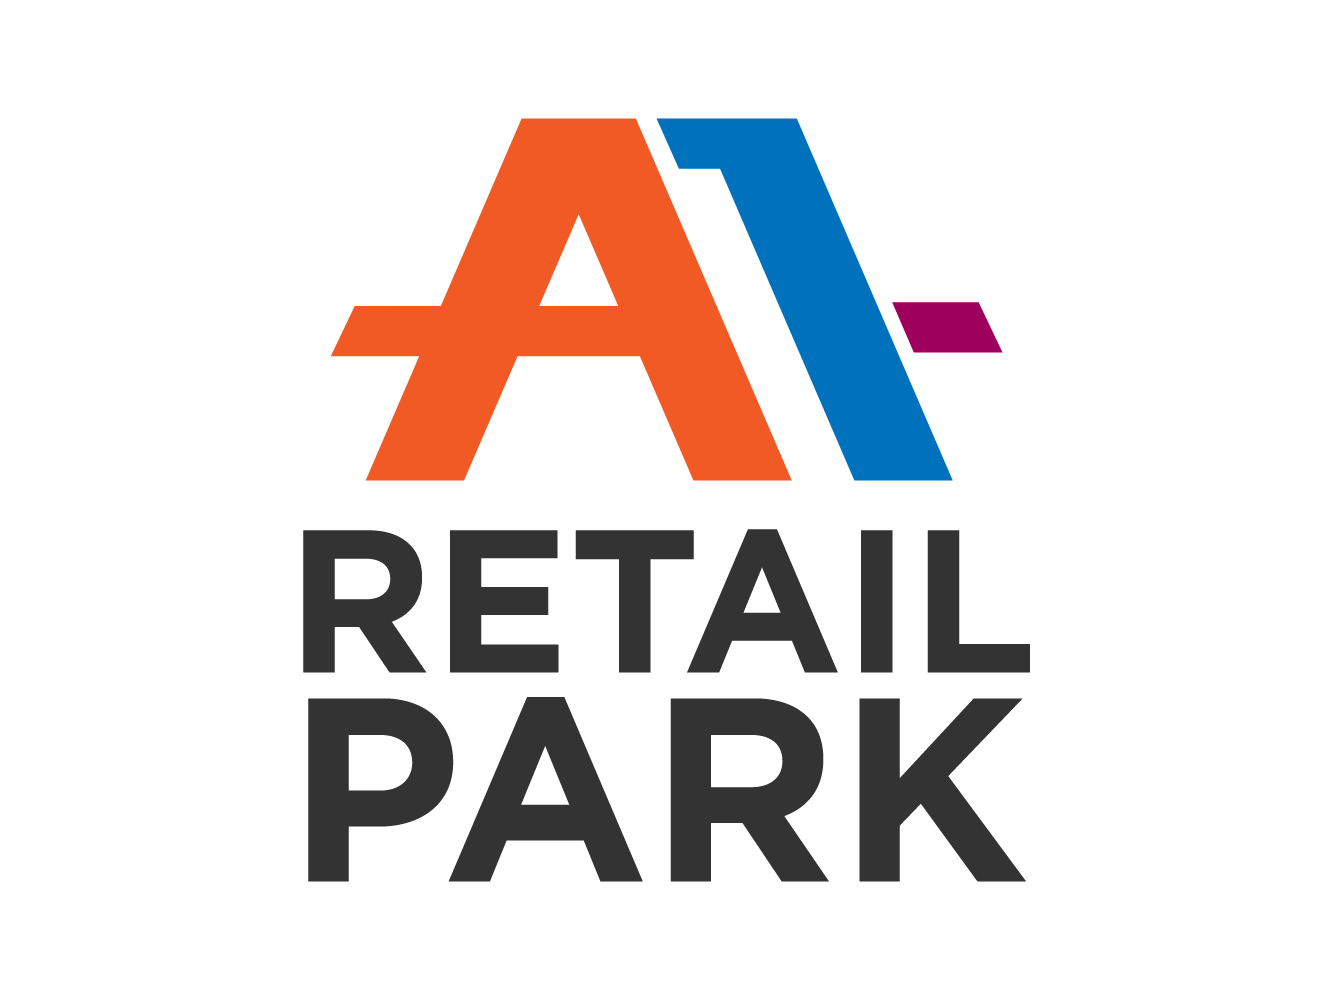 A1 Retail Park